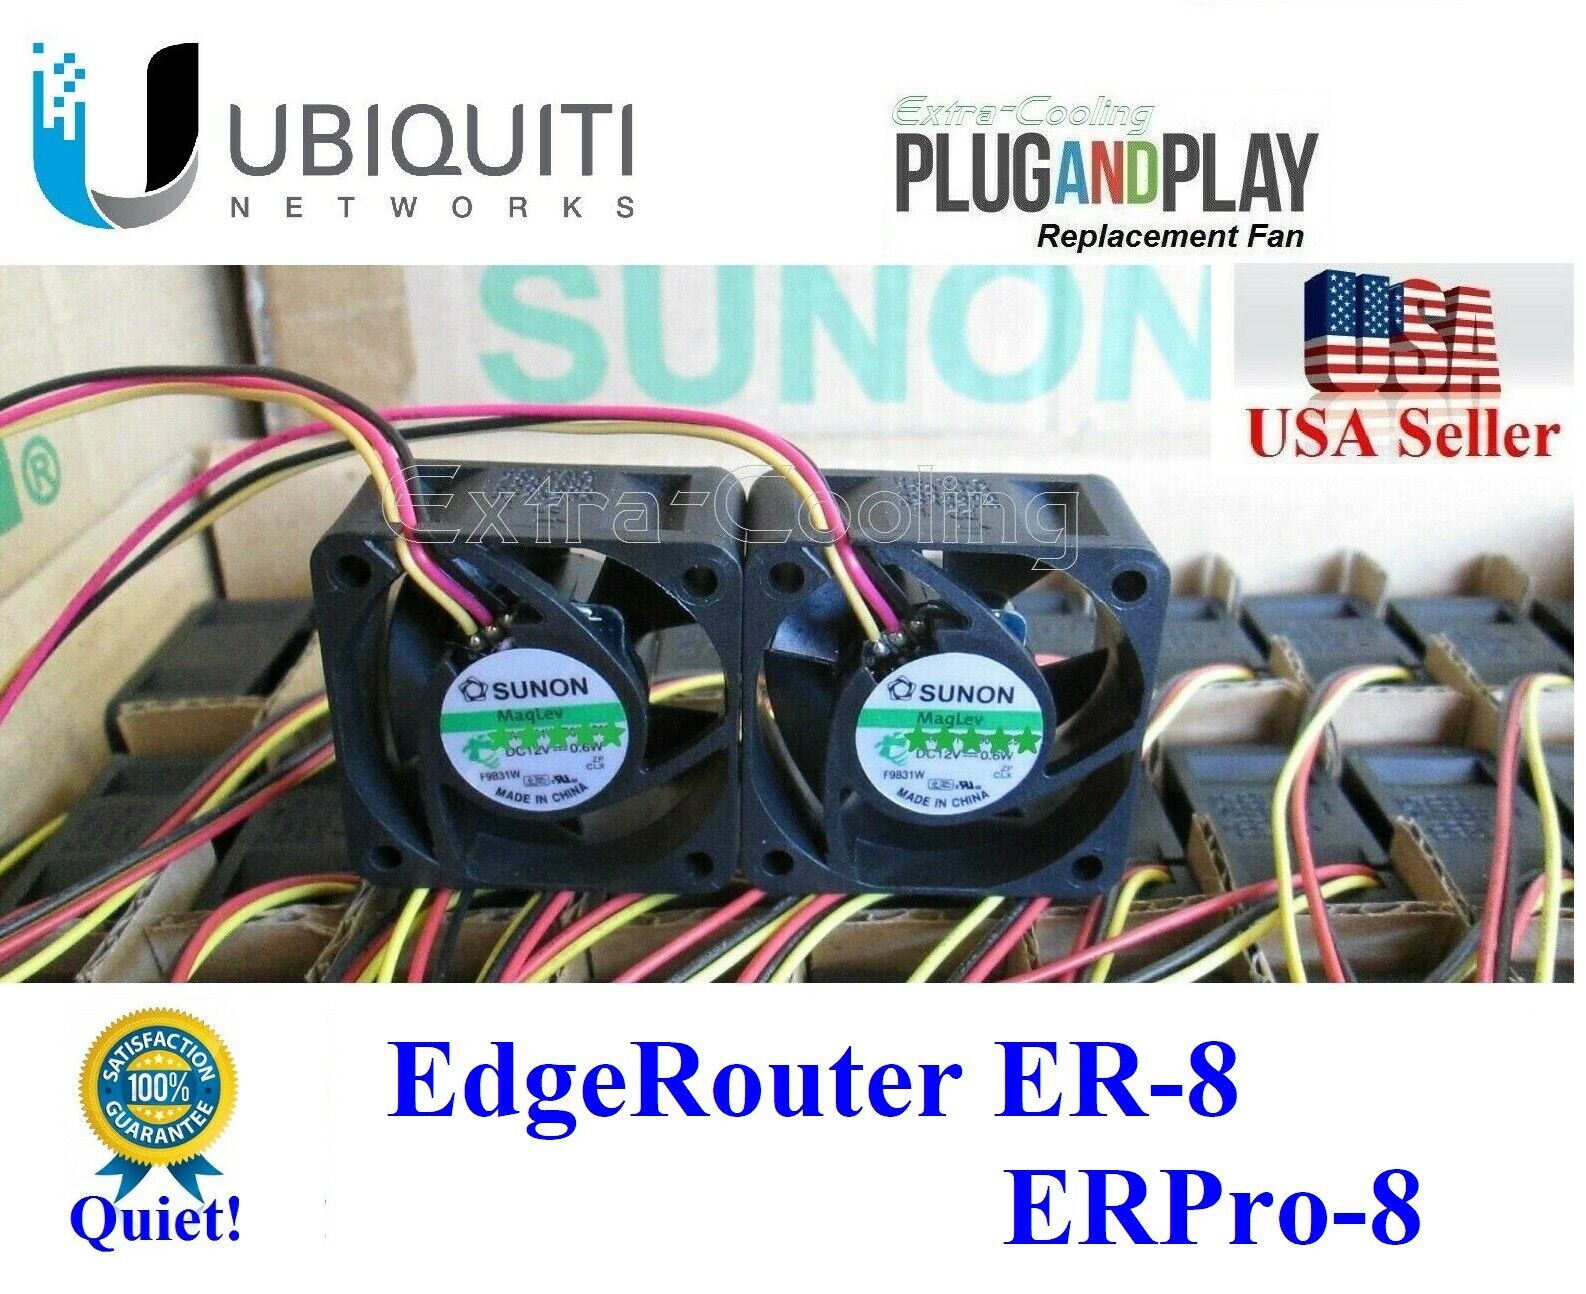 2x Quiet Version Replacement Fans for EdgeRouter ER-8 or ERPro-8 Low Noise